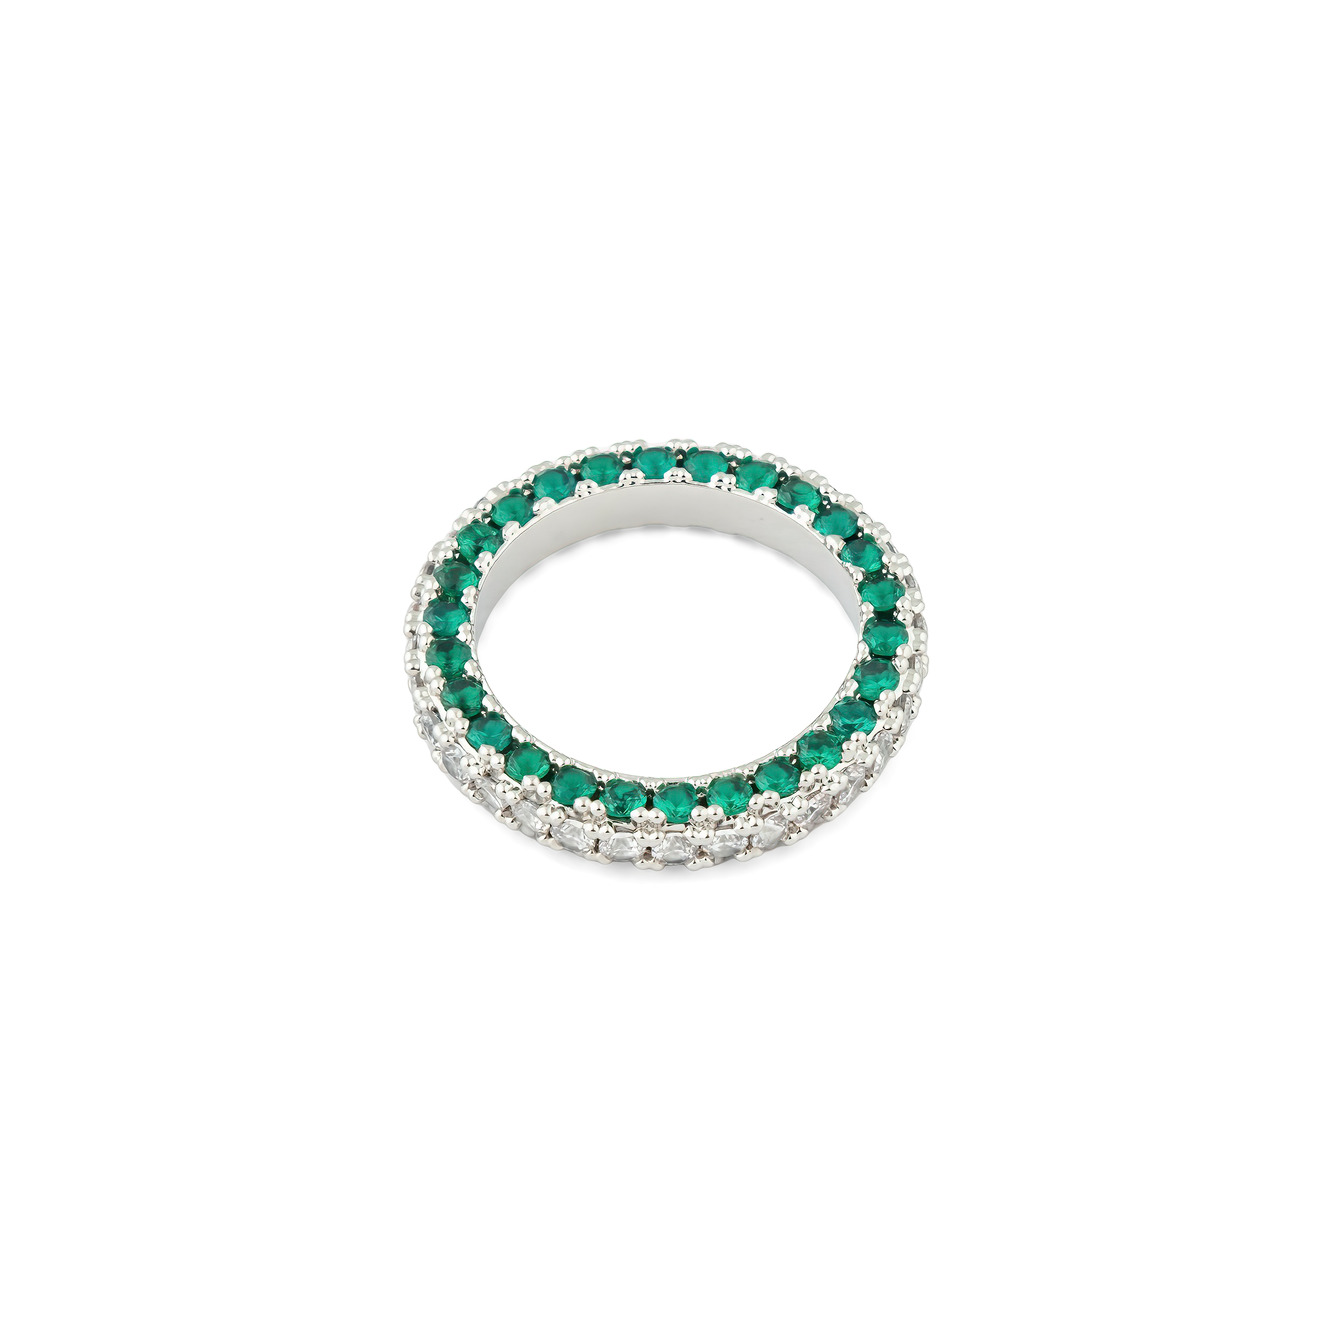 Herald Percy Серебристое кольцо с белыми и зелеными кристаллами herald percy кольцо с золотистыми кристаллами